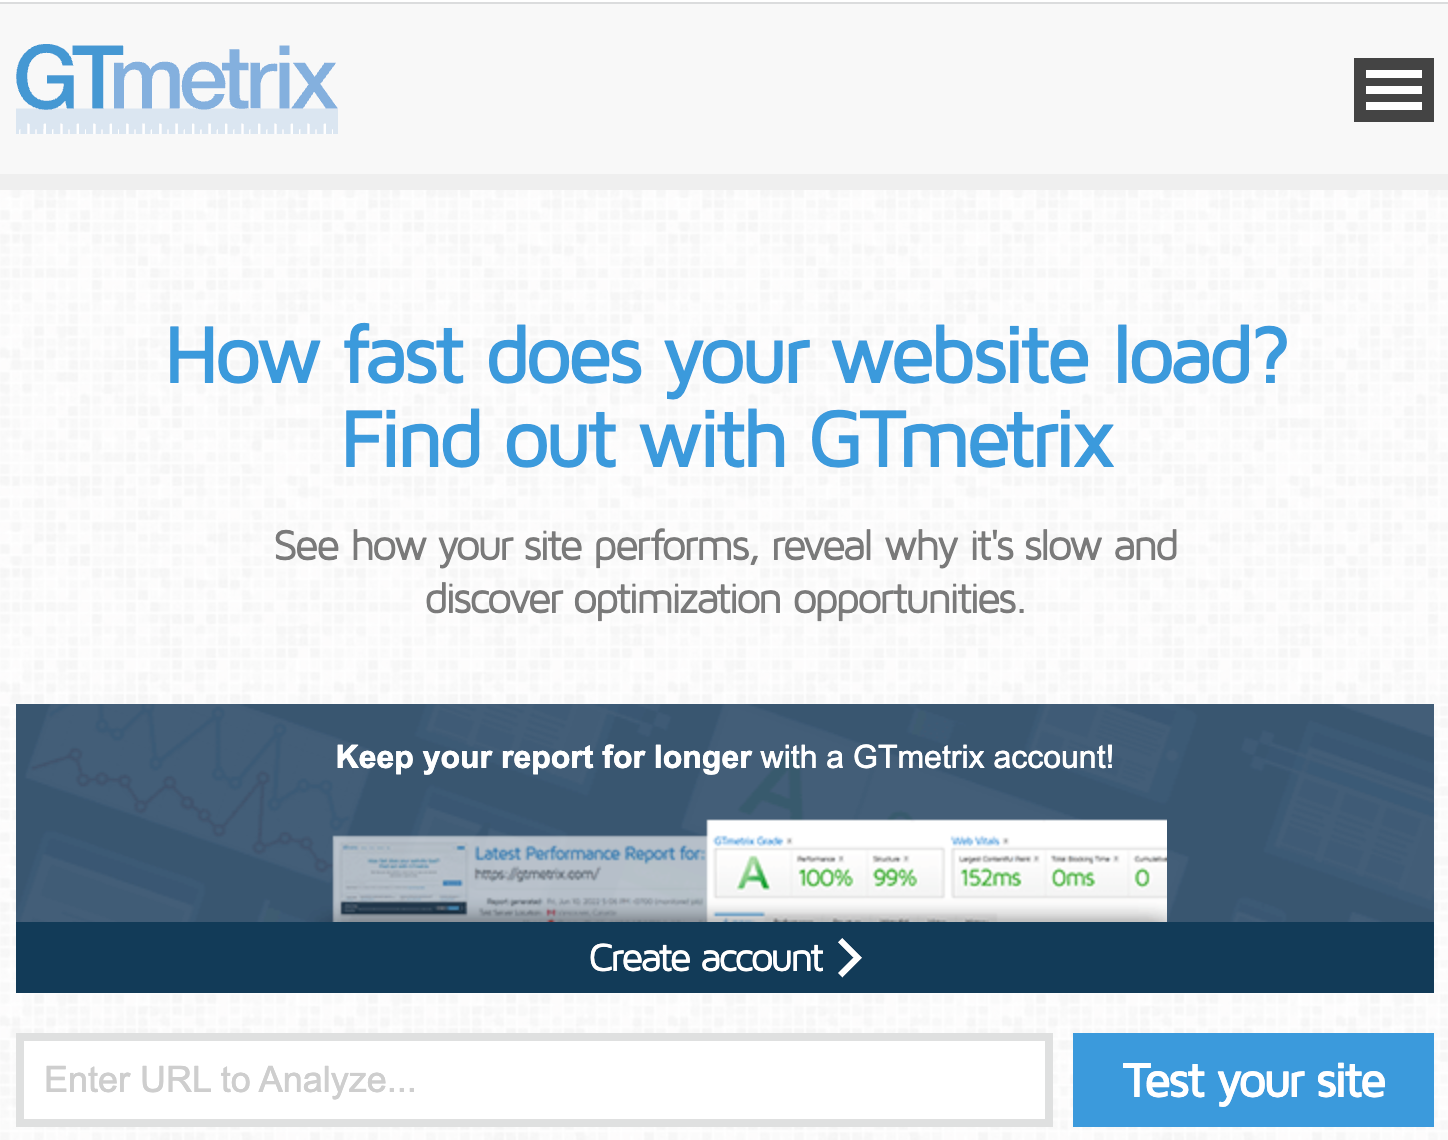 Gtmetrix Home Page Interface